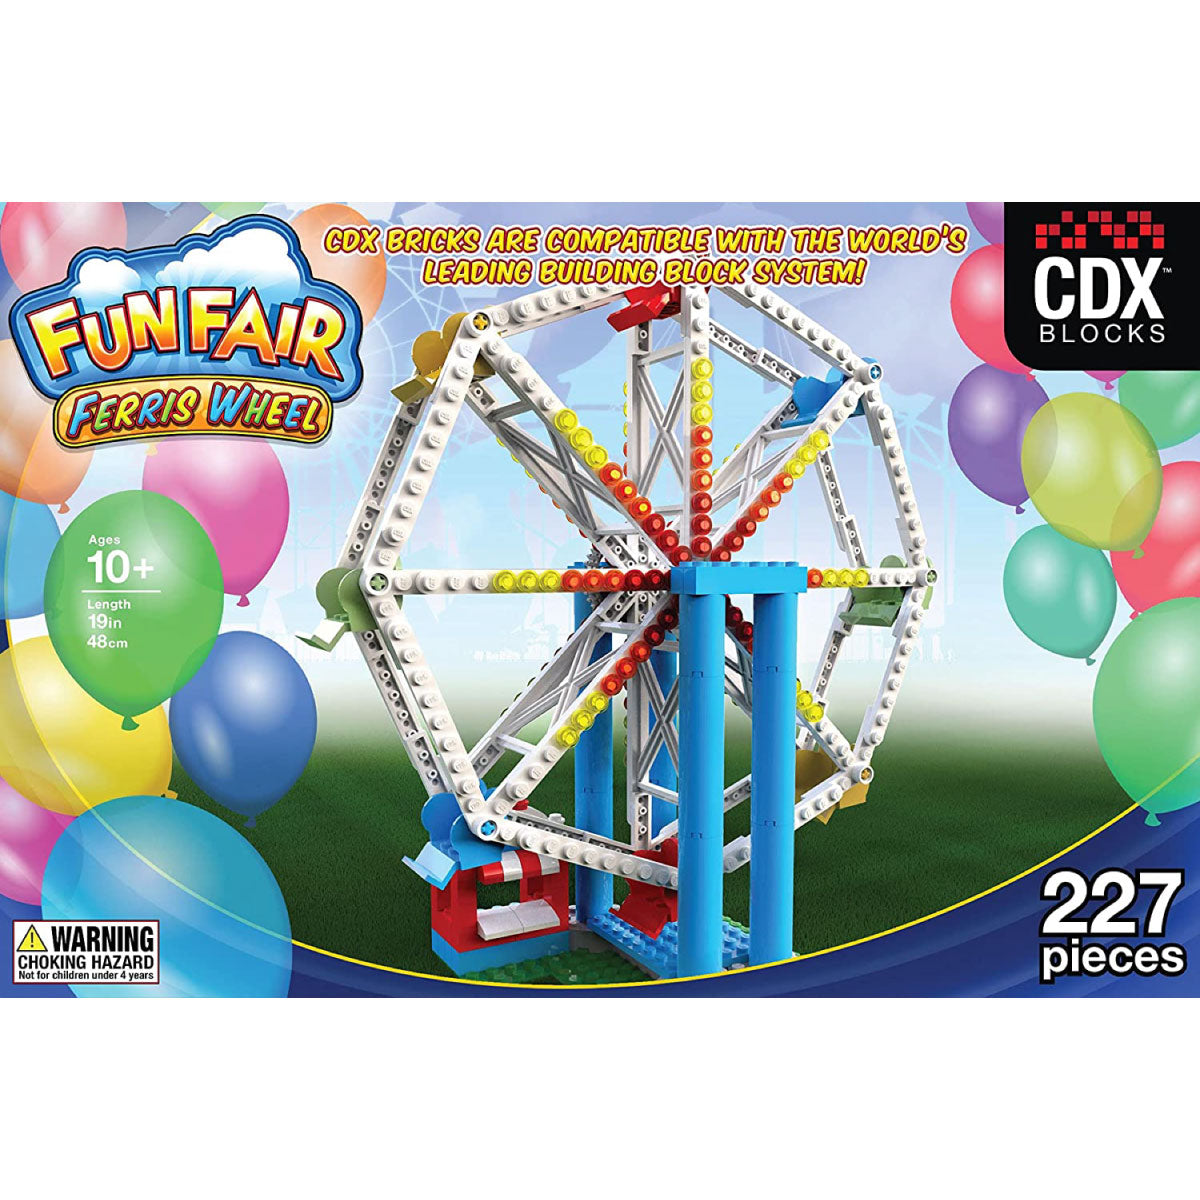 CDX Blocks Fun Fair Ferris Wheel